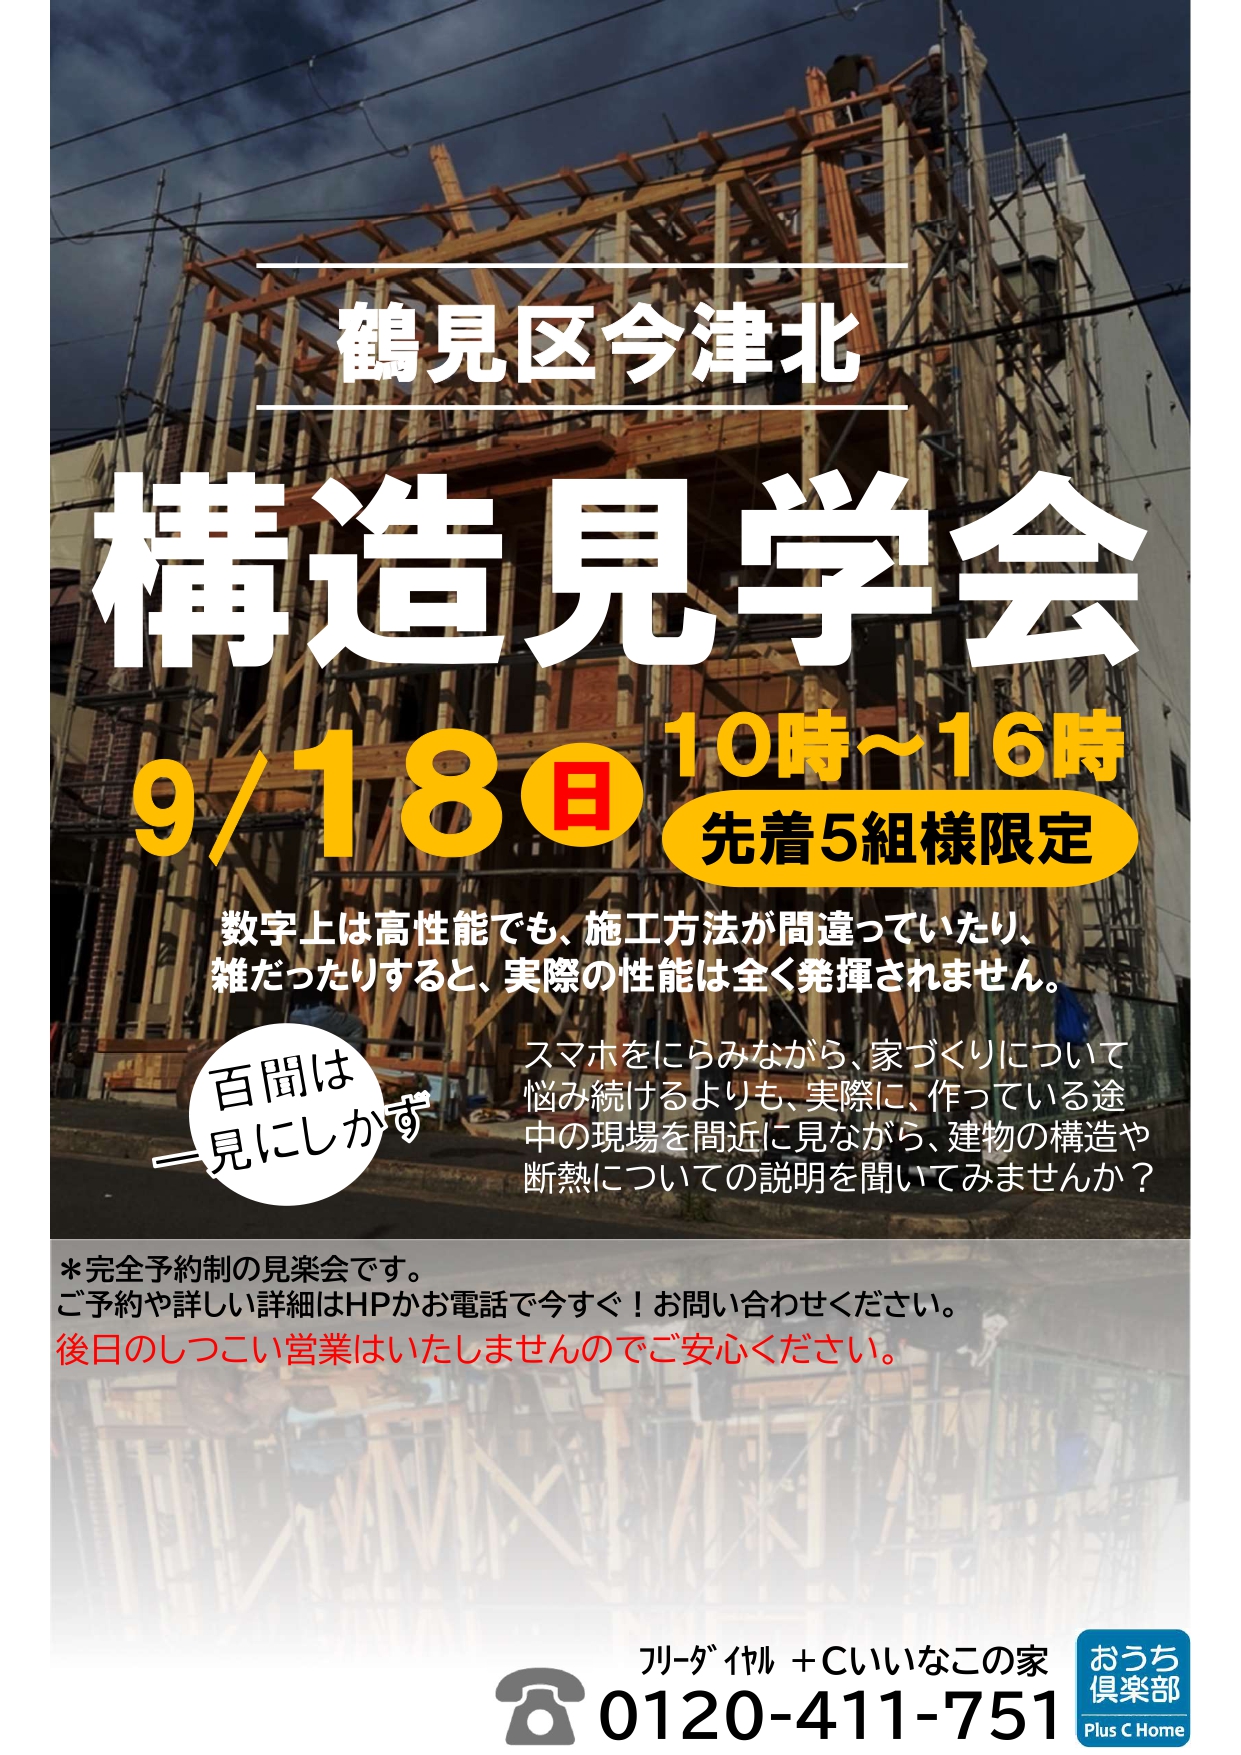 ２組様のご縁に感謝です。大阪市鶴見区で高断熱・高気密住宅を建てております工務店Plus C Homeが構造見学会を開催♪